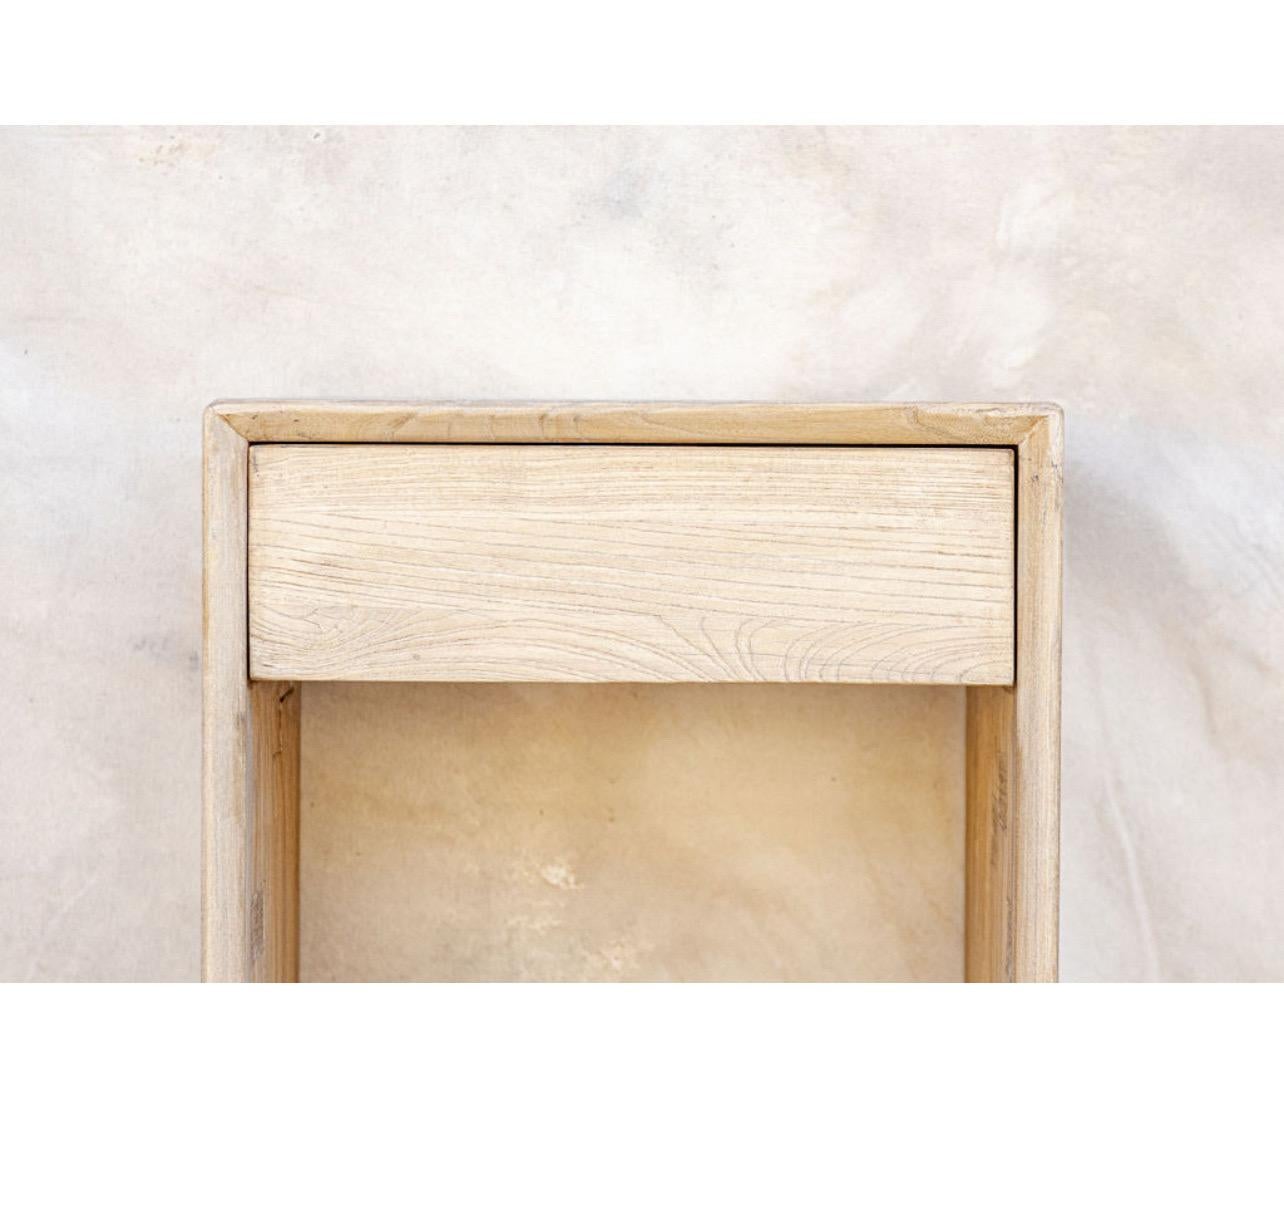 Hergestellt aus altem Ulmenholz, das aus Europa und Asien bezogen wird. Wir lieben dieses Stück mit seinem minimalistischen Schubladendesign und den natürlichen Holztönen. 